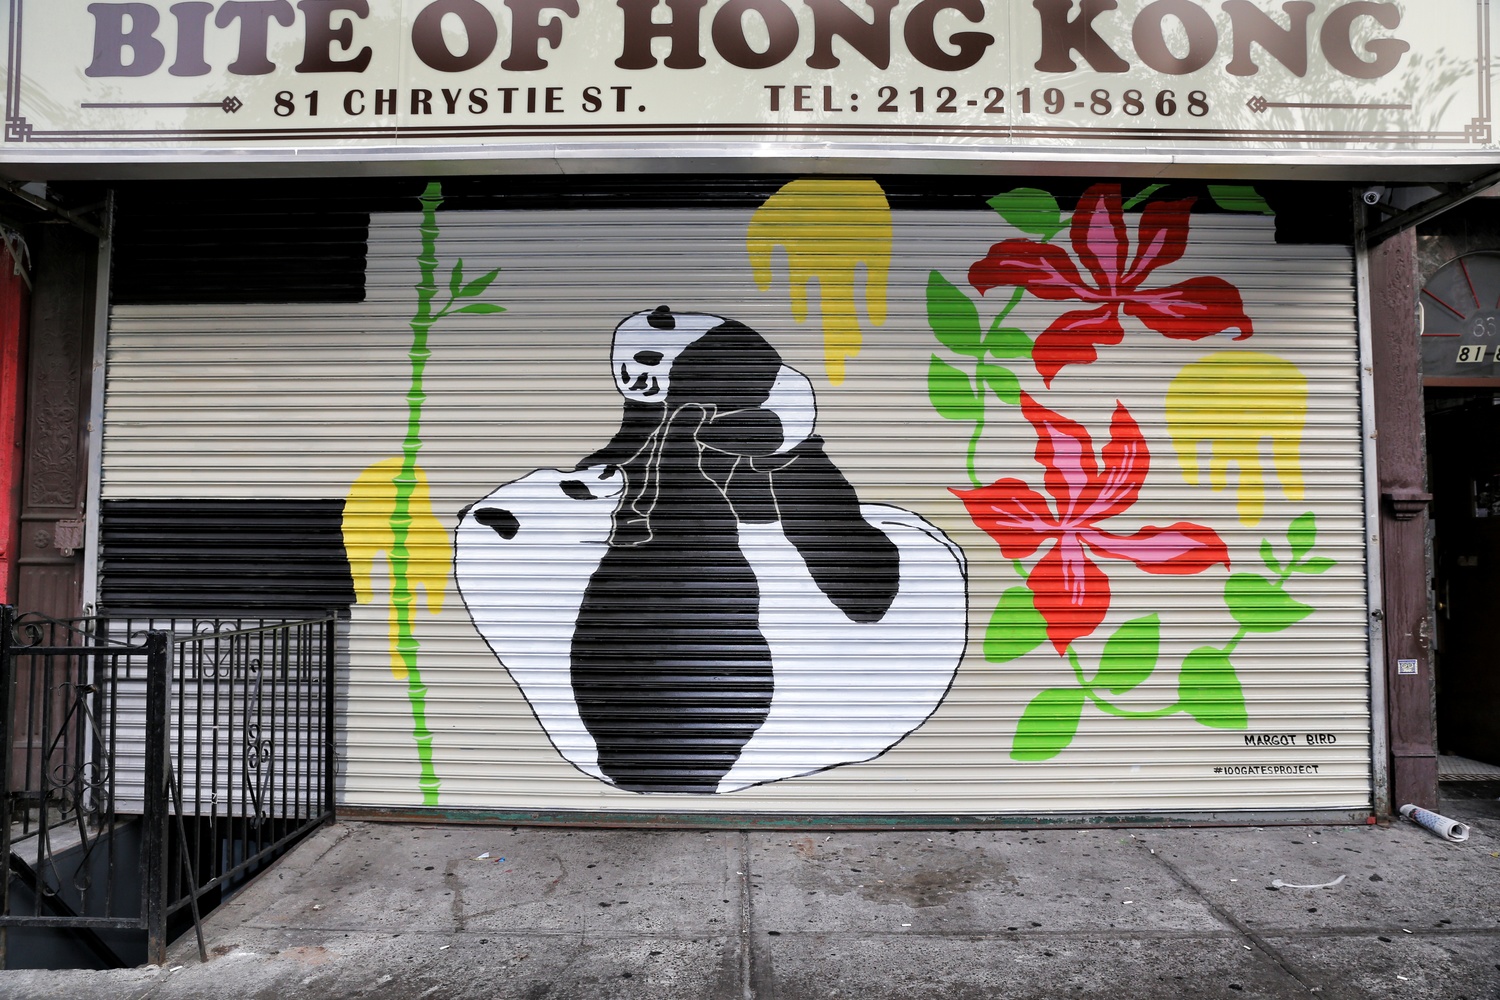  Bite of Hong Kong @ 81 Chrystie Street Artwork by Margot Bird 